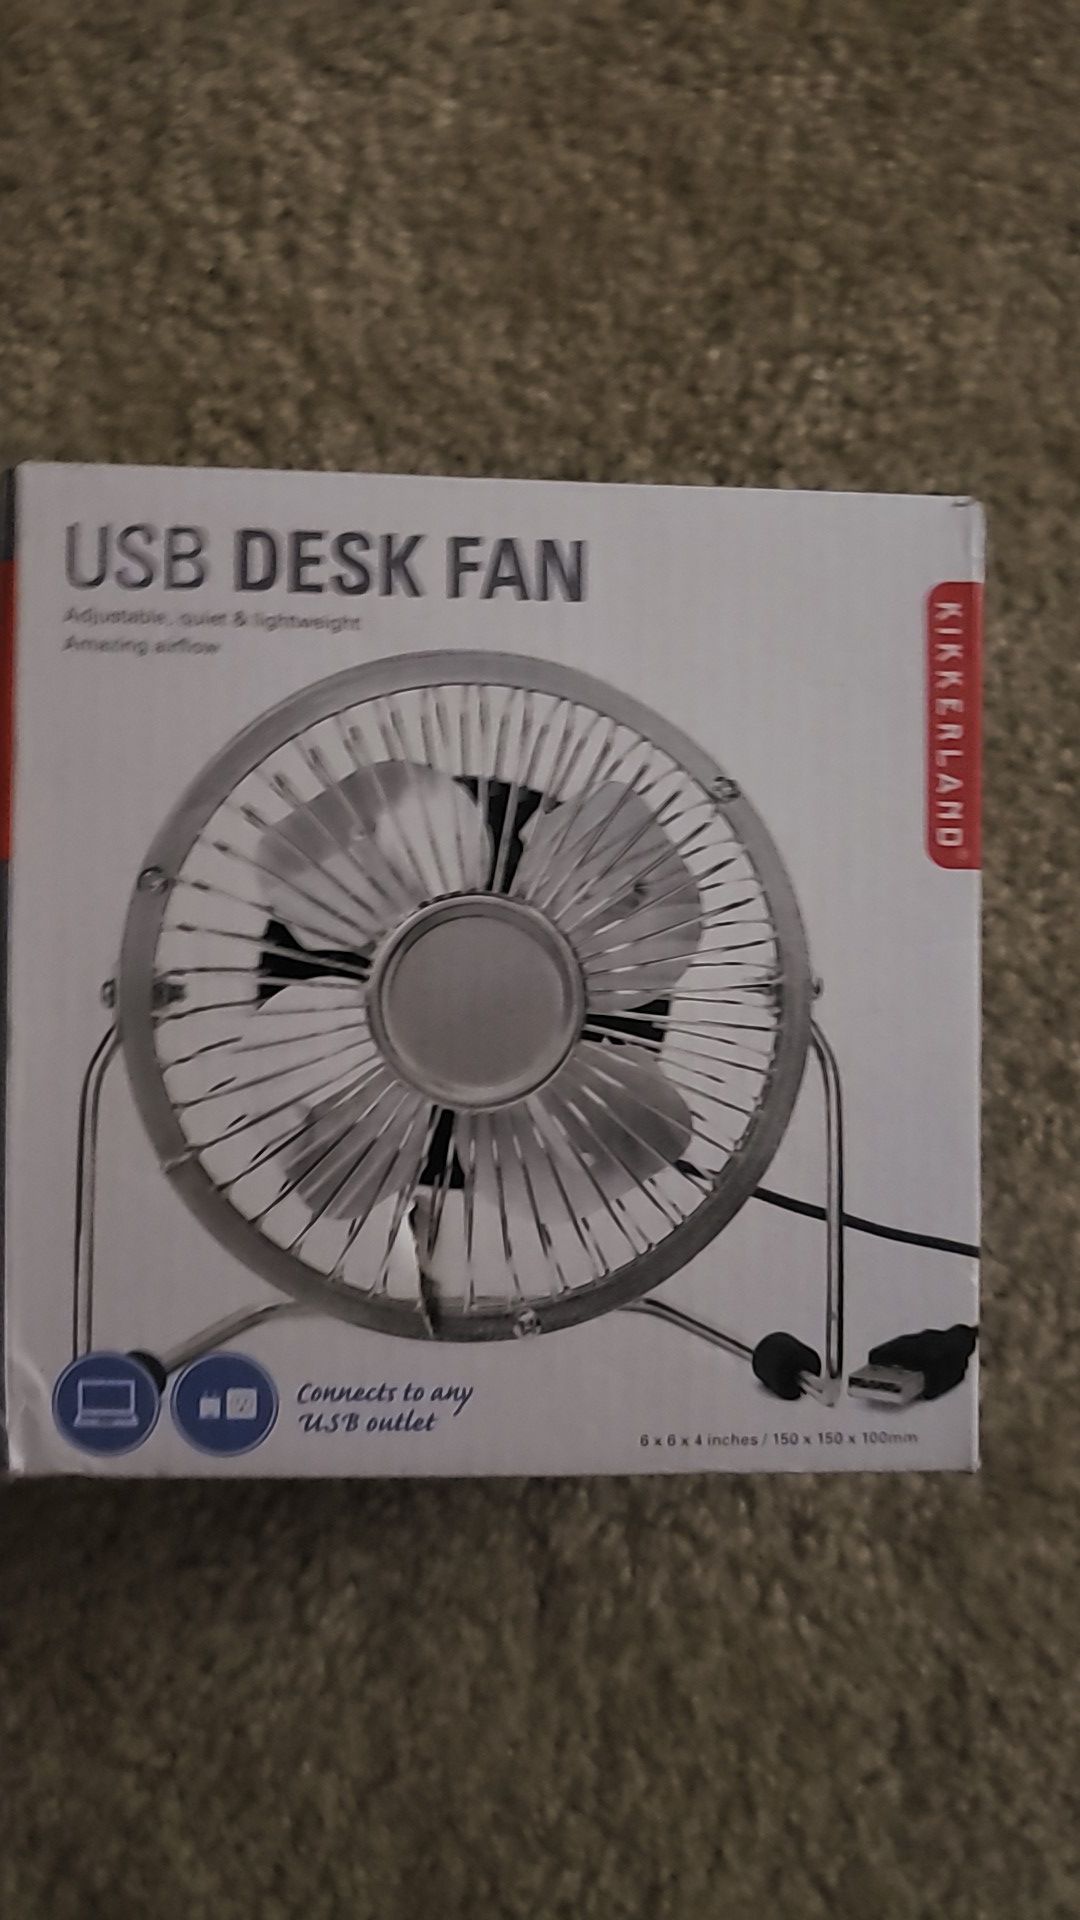 USB desk fan